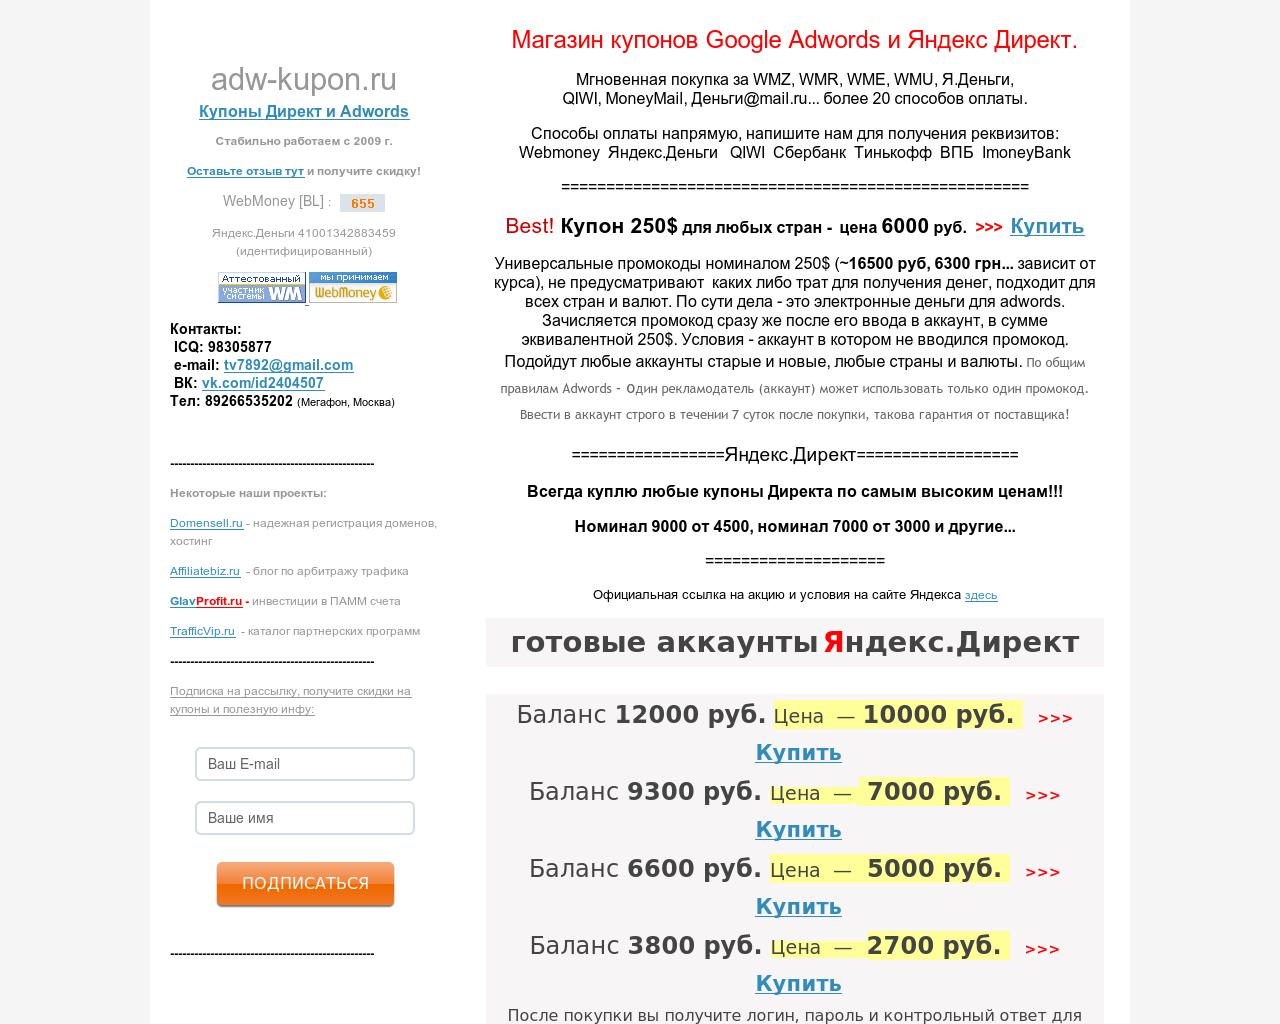 Изображение сайта adw-kupon.ru в разрешении 1280x1024